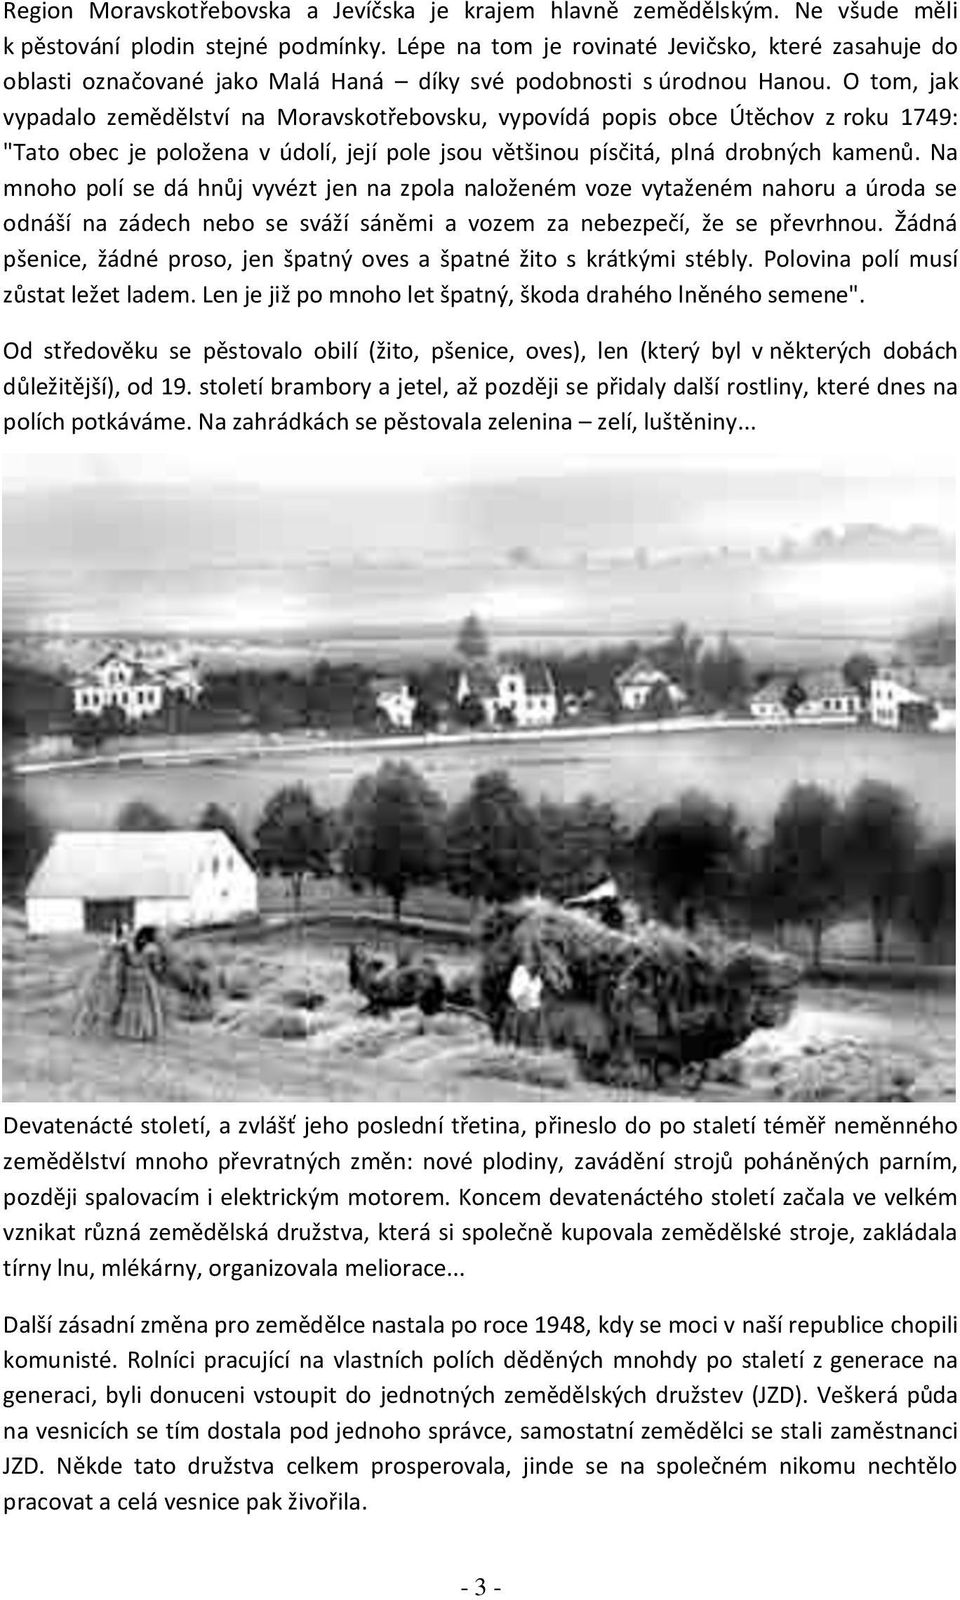 O tom, jak vypadalo zemědělství na Moravskotřebovsku, vypovídá popis obce Útěchov z roku 1749: "Tato obec je položena v údolí, její pole jsou většinou písčitá, plná drobných kamenů.